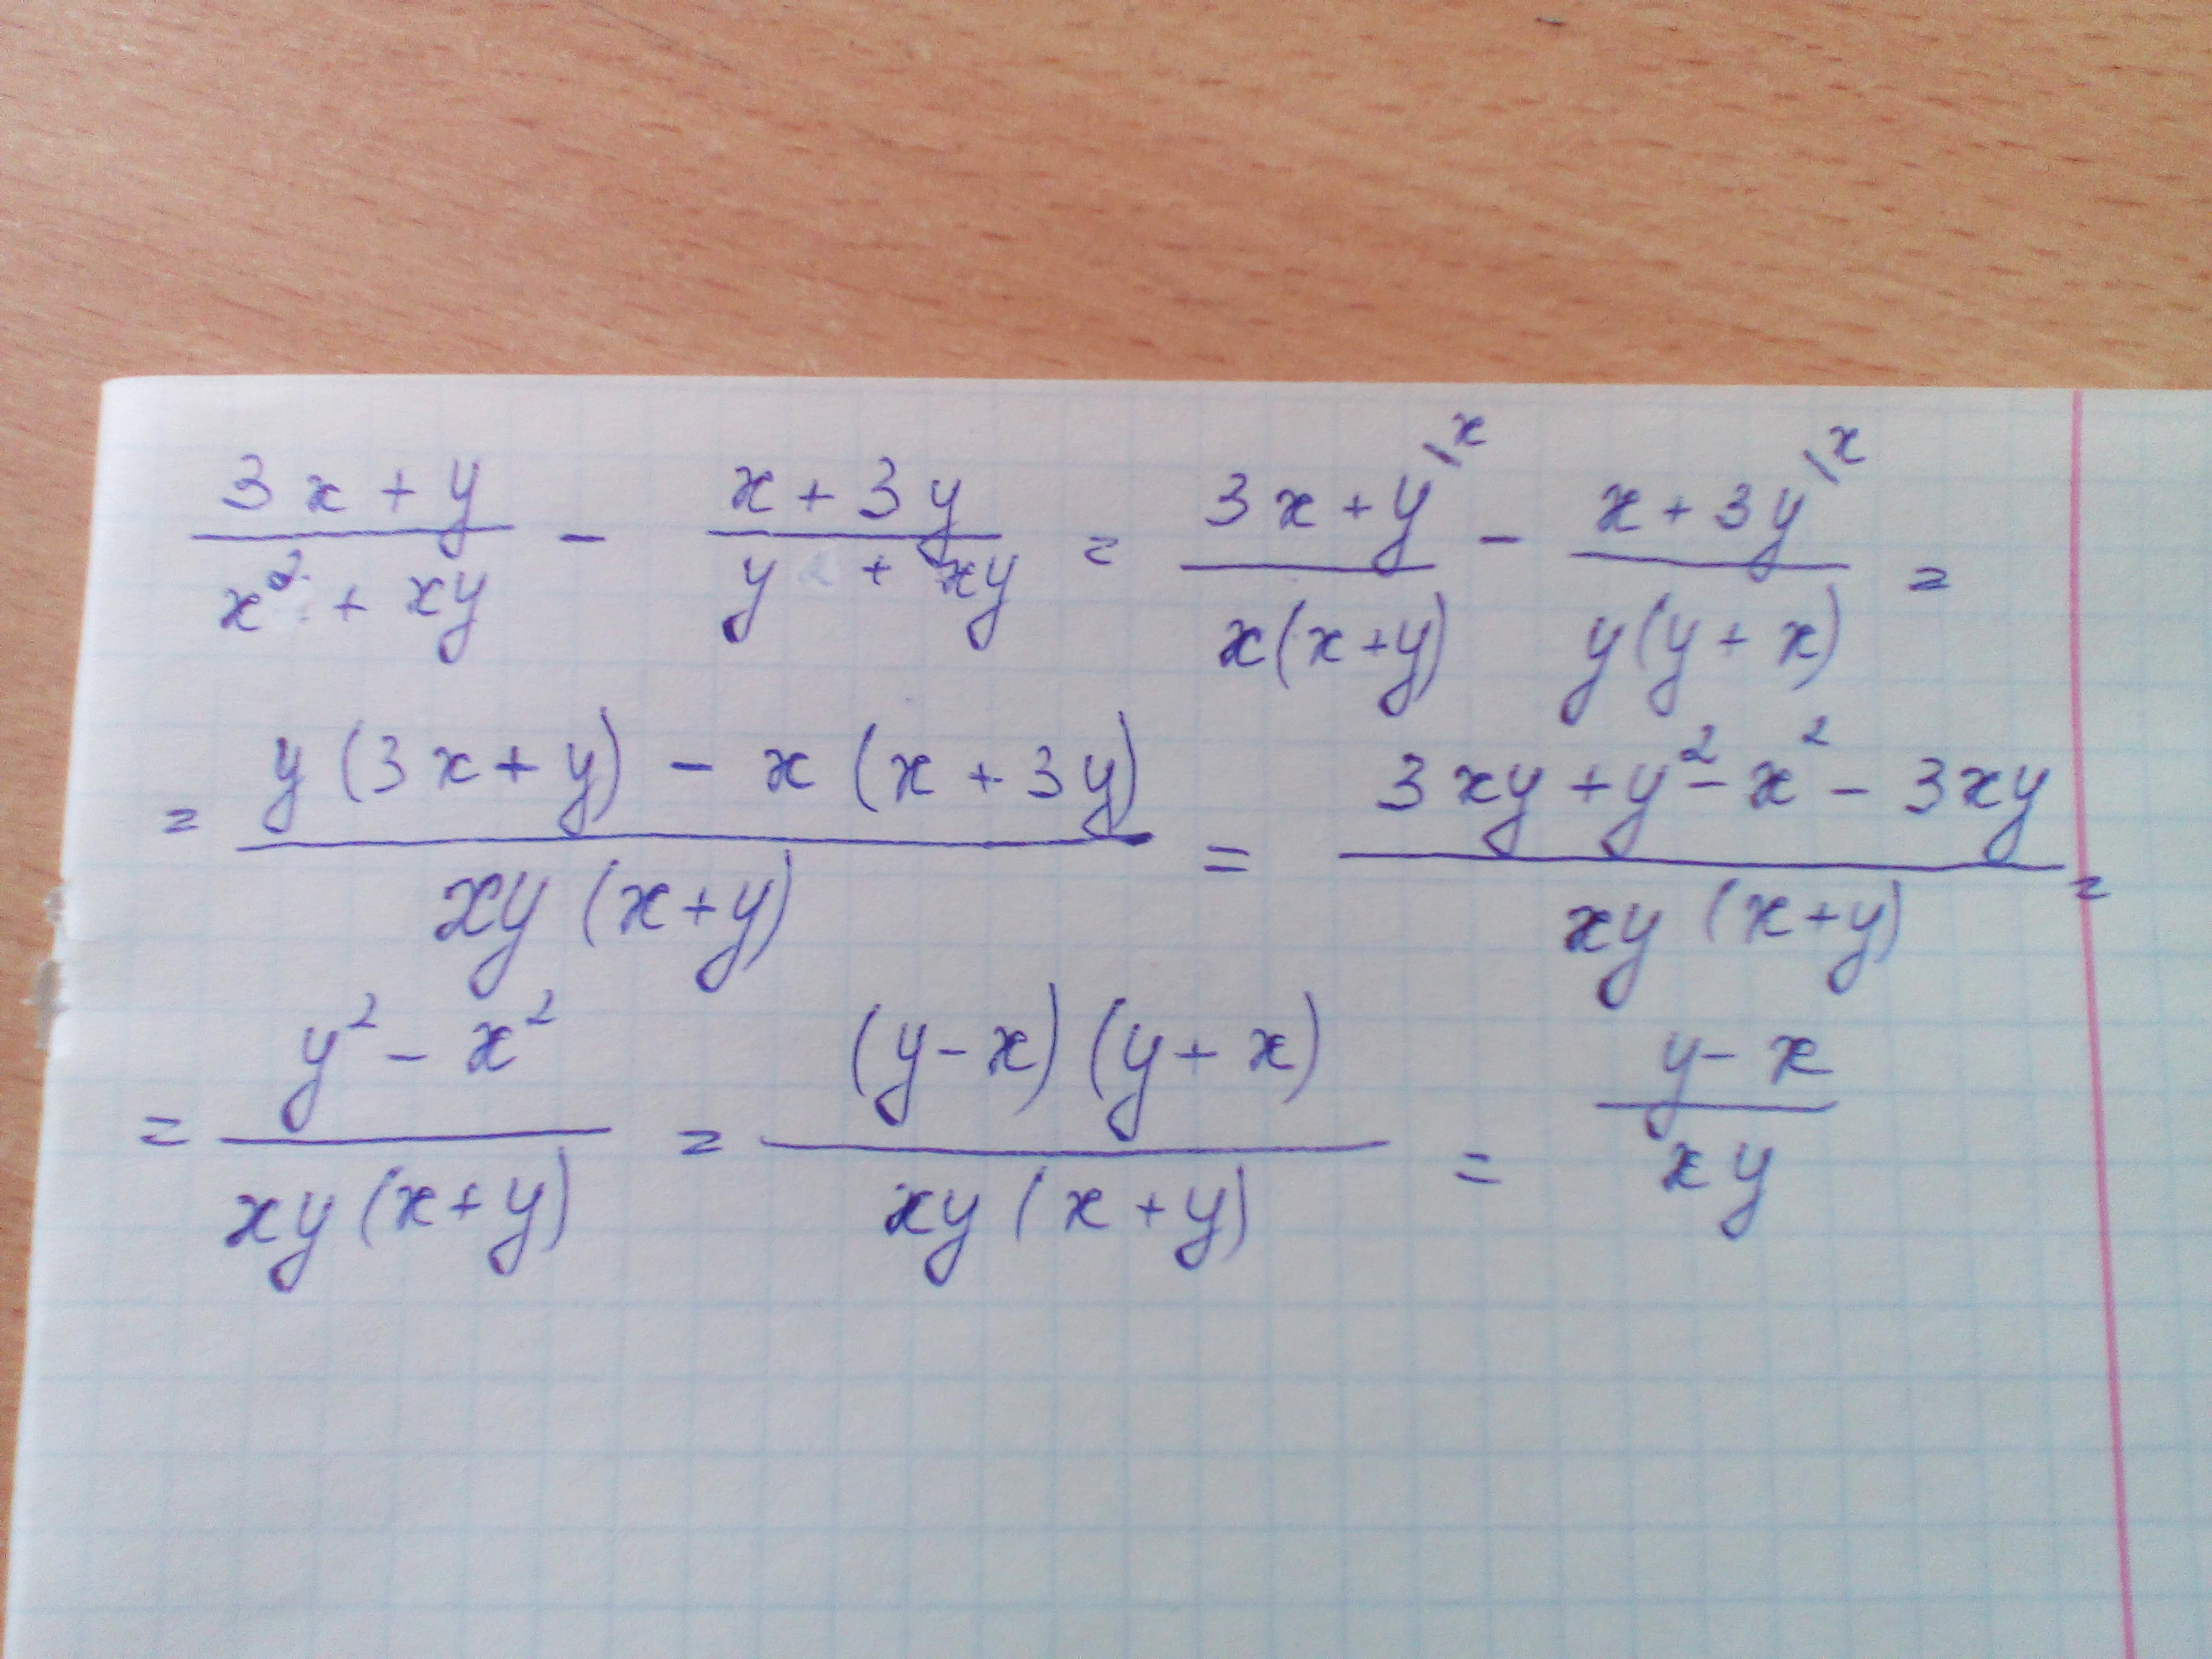 5x 2 4x 3 упростите выражения. X 2 +Y 2 =2x+2y+XY. Упростить выражение x^2-y^2/x^2-2xy+y^2. 3x+y/x2+XY-X+3y/y2+XY. 3x+y/x2+XY-X+3y/y2+XY упростите выражение.